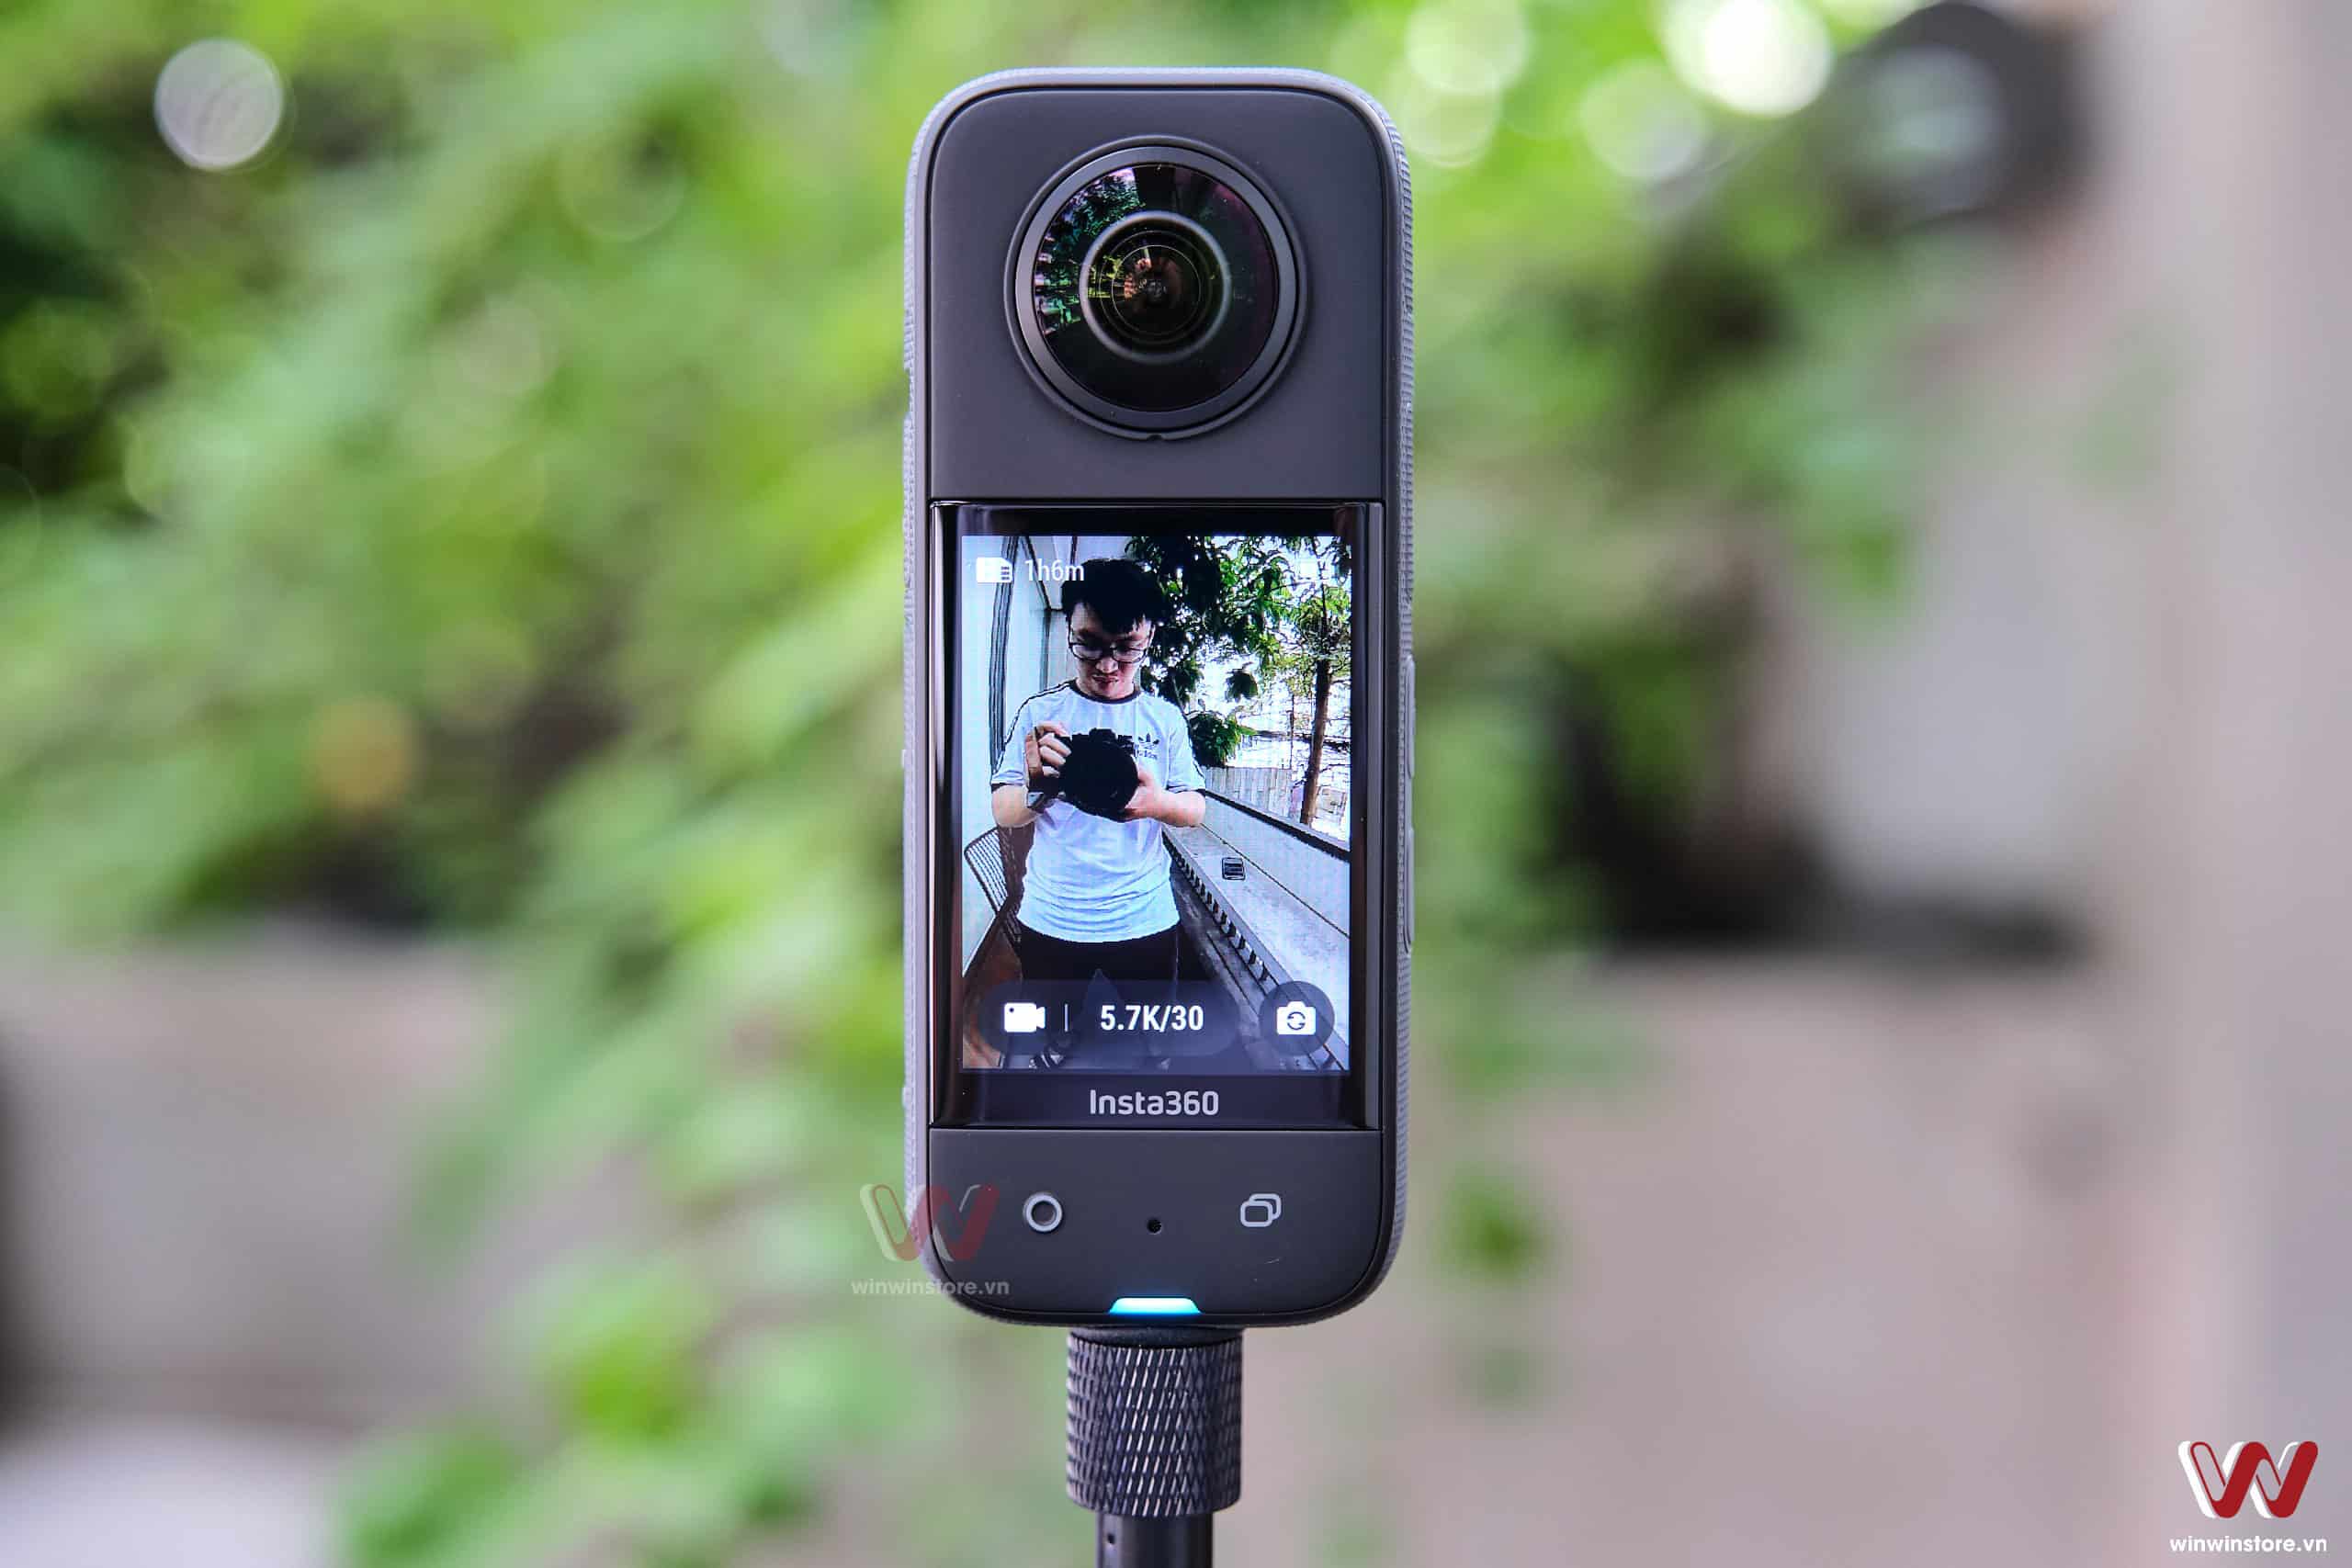 Hướng dẫn cập nhật firmware cho camera Insta360 X3 bằng ứng dụng smartphone